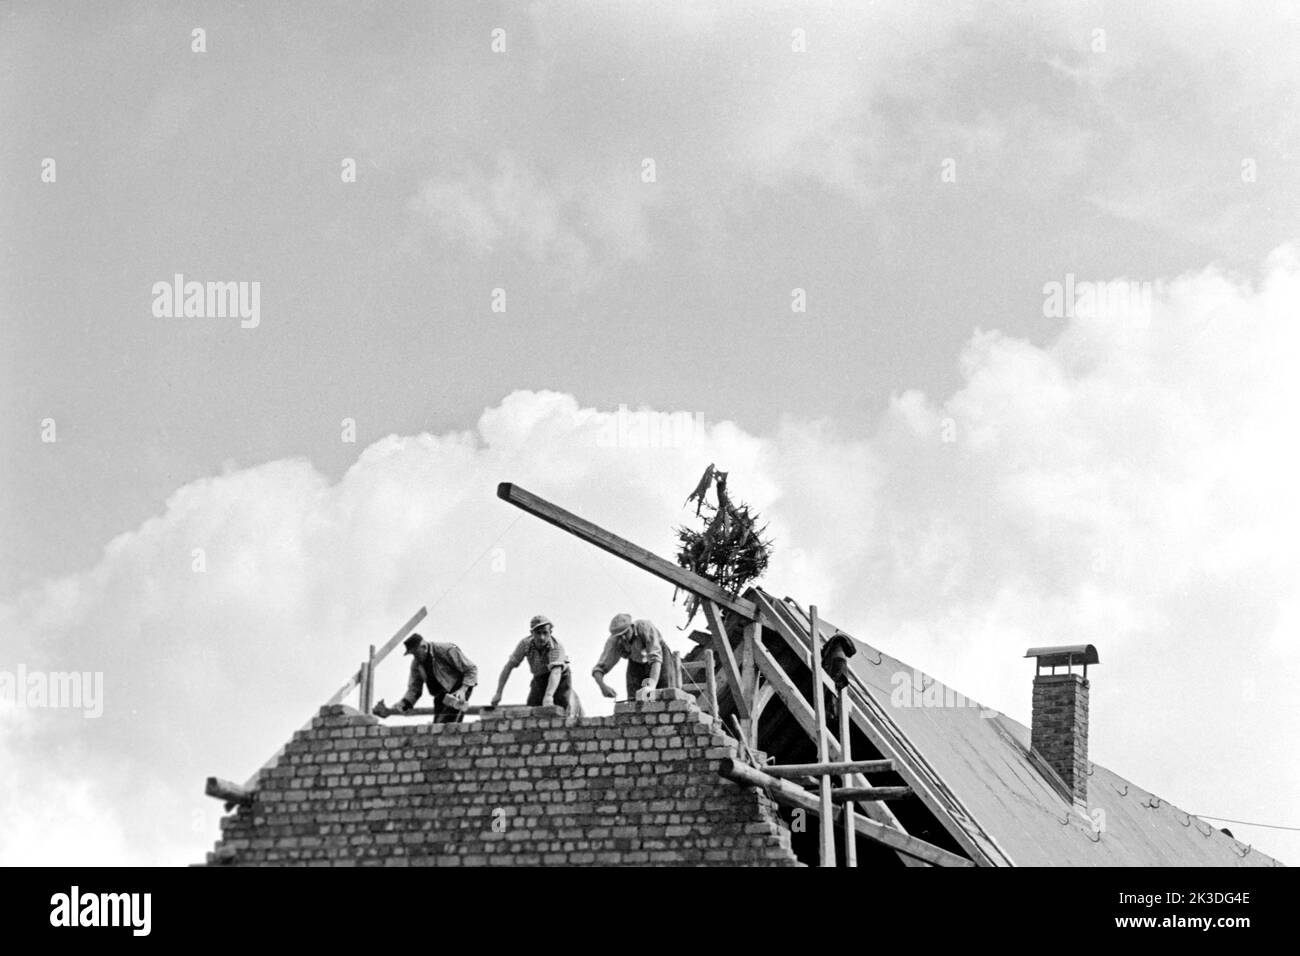 Hausbau in Prüm in der Eifel, circa 1952. Dwelling under construction in Prüm, Eifel Region, around 1952. Stock Photo